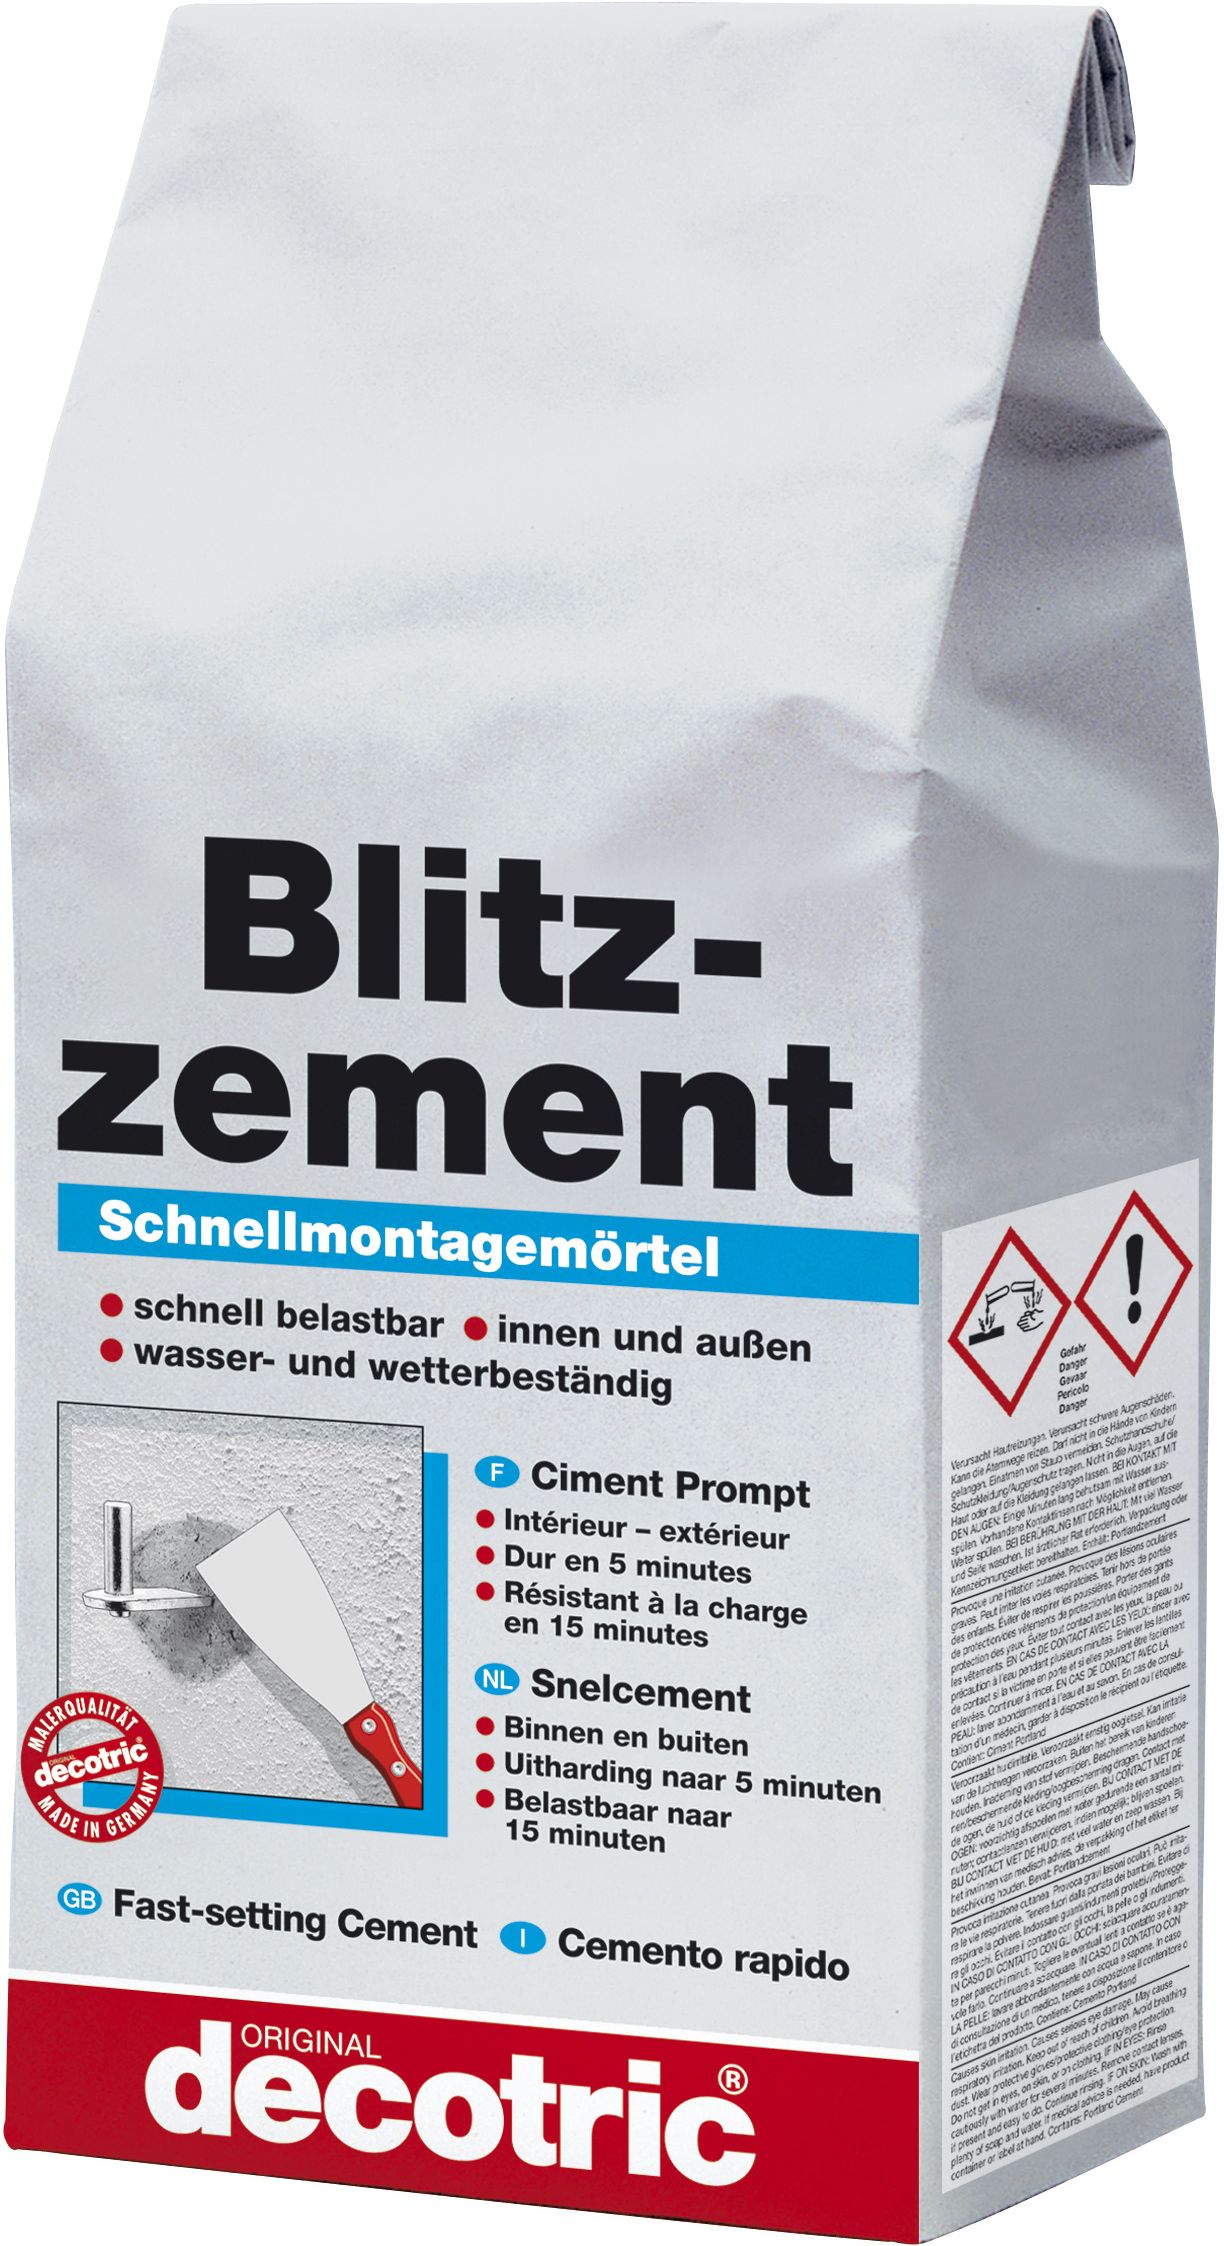 decotric Ciment prompt 5kg